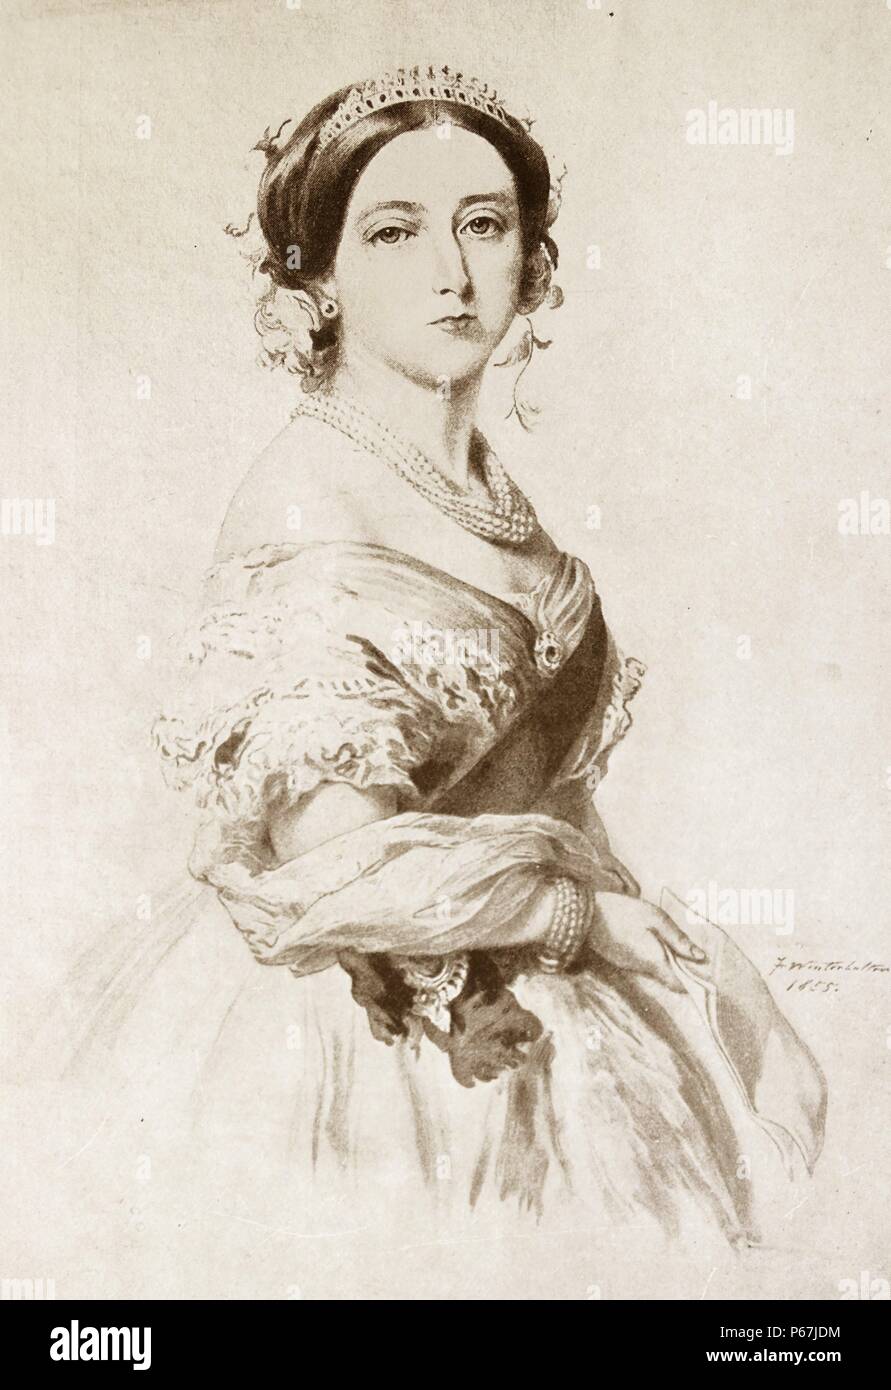 La reine Victoria de Grande-Bretagne en 1855. Victoria (Alexandrina Victoria ; 24 mai 1819 - 22 janvier 1901) a été le monarque du Royaume-Uni de Grande-Bretagne et d'Irlande de 20 juin 1837 jusqu'à sa mort. À partir du 1er mai 1876, elle a utilisé le titre supplémentaire de l'Impératrice de l'Inde Banque D'Images